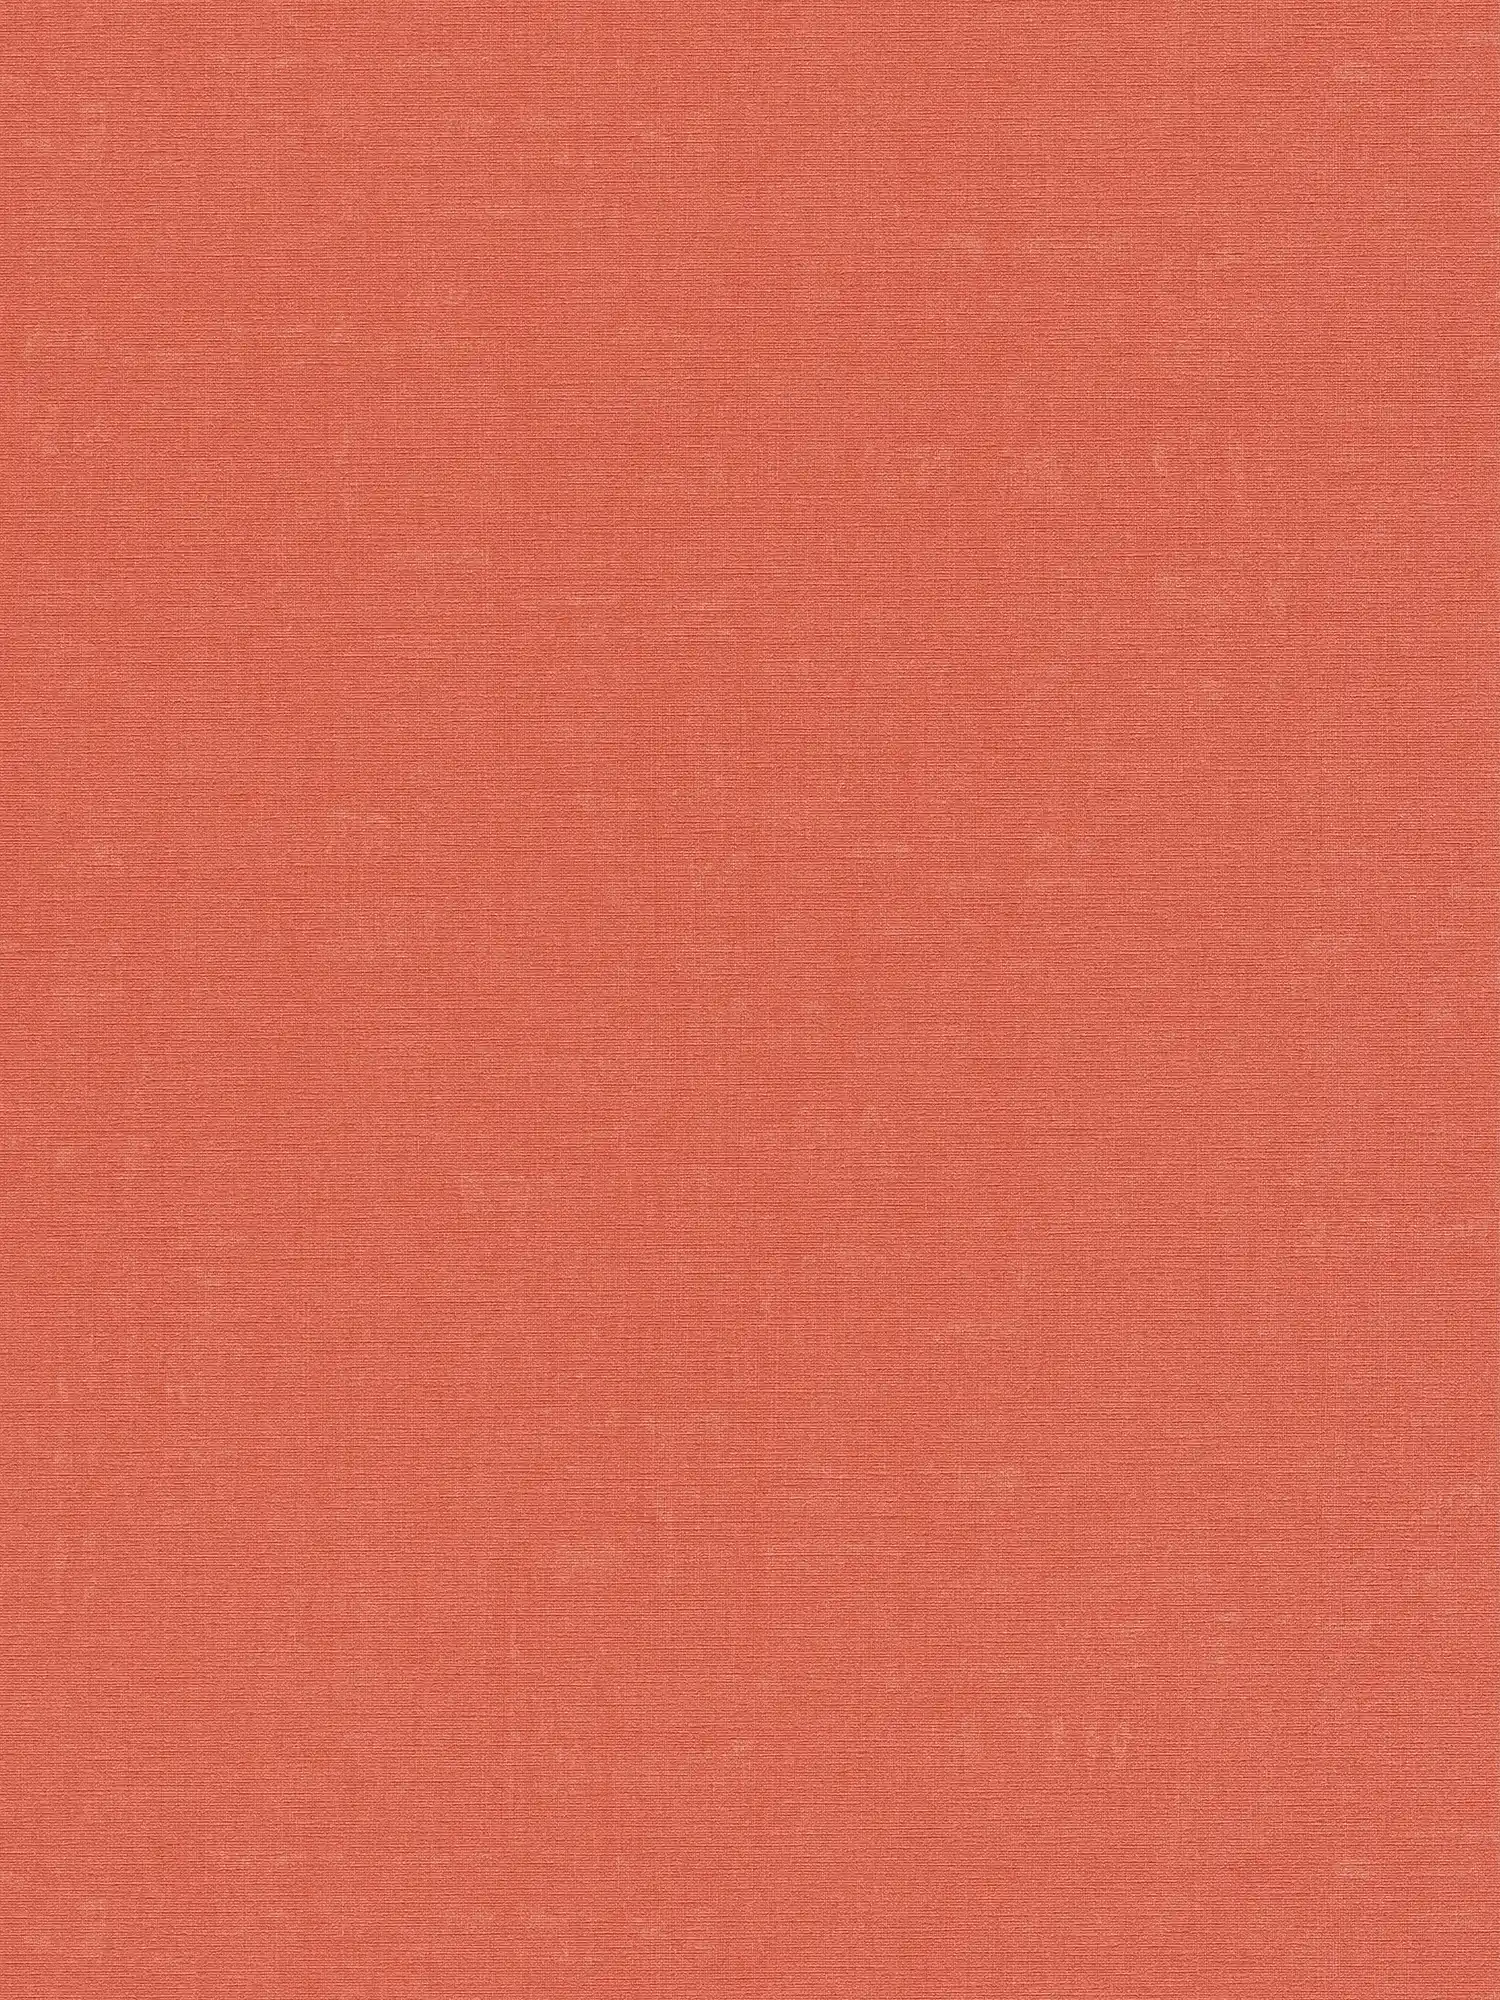 Einfarbige Tapete mit meliertem Muster – Orange, Rot
